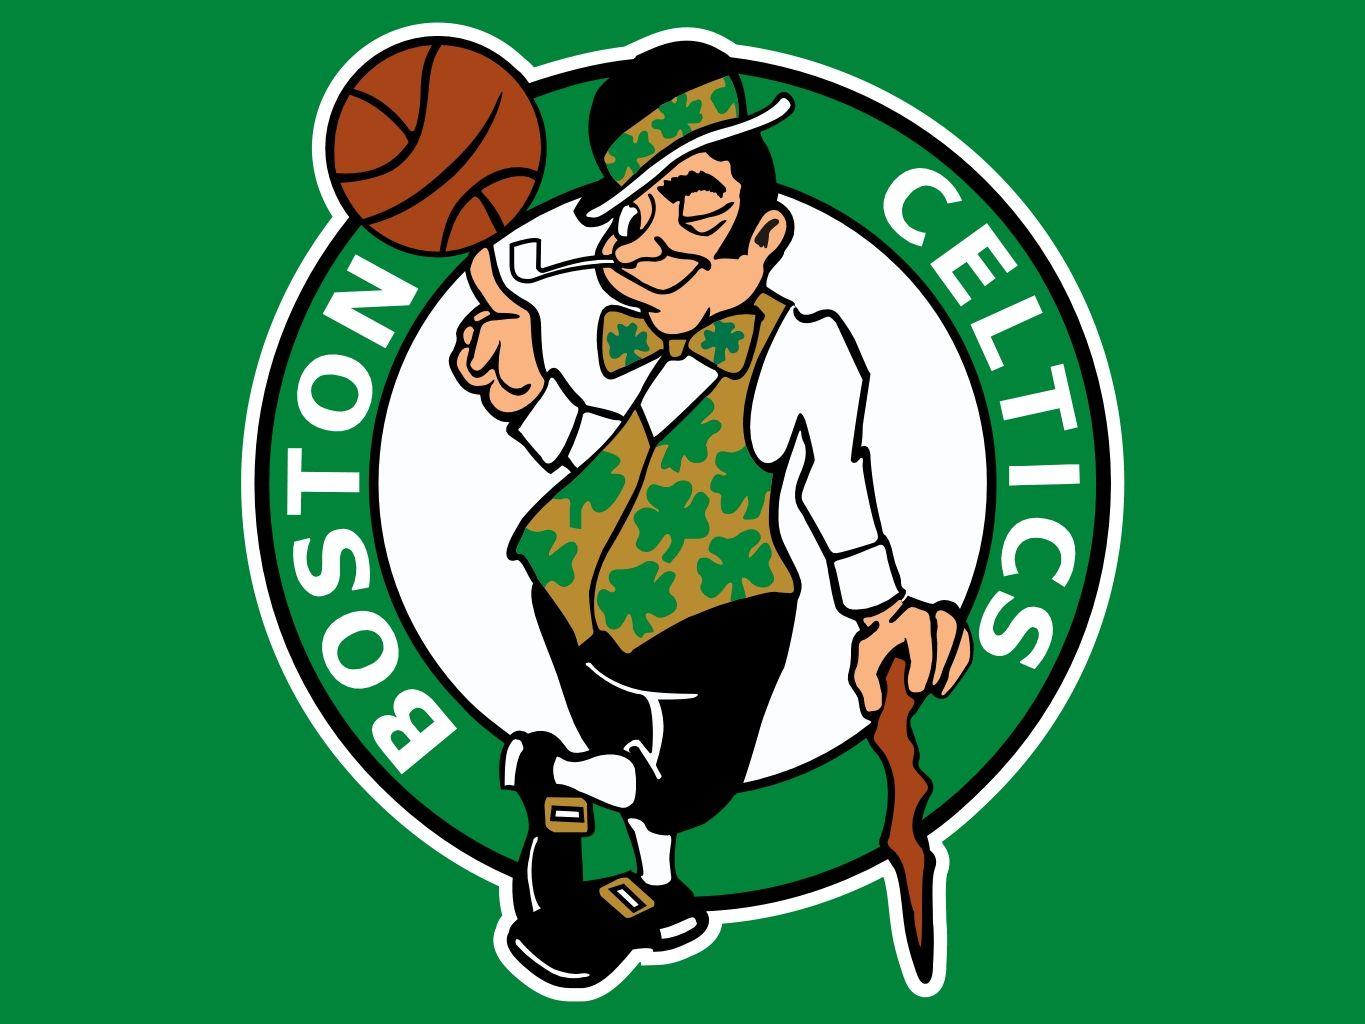 Boston NBA Logo - Boston's leprechaun comes in at No. 6 in Grantland's 